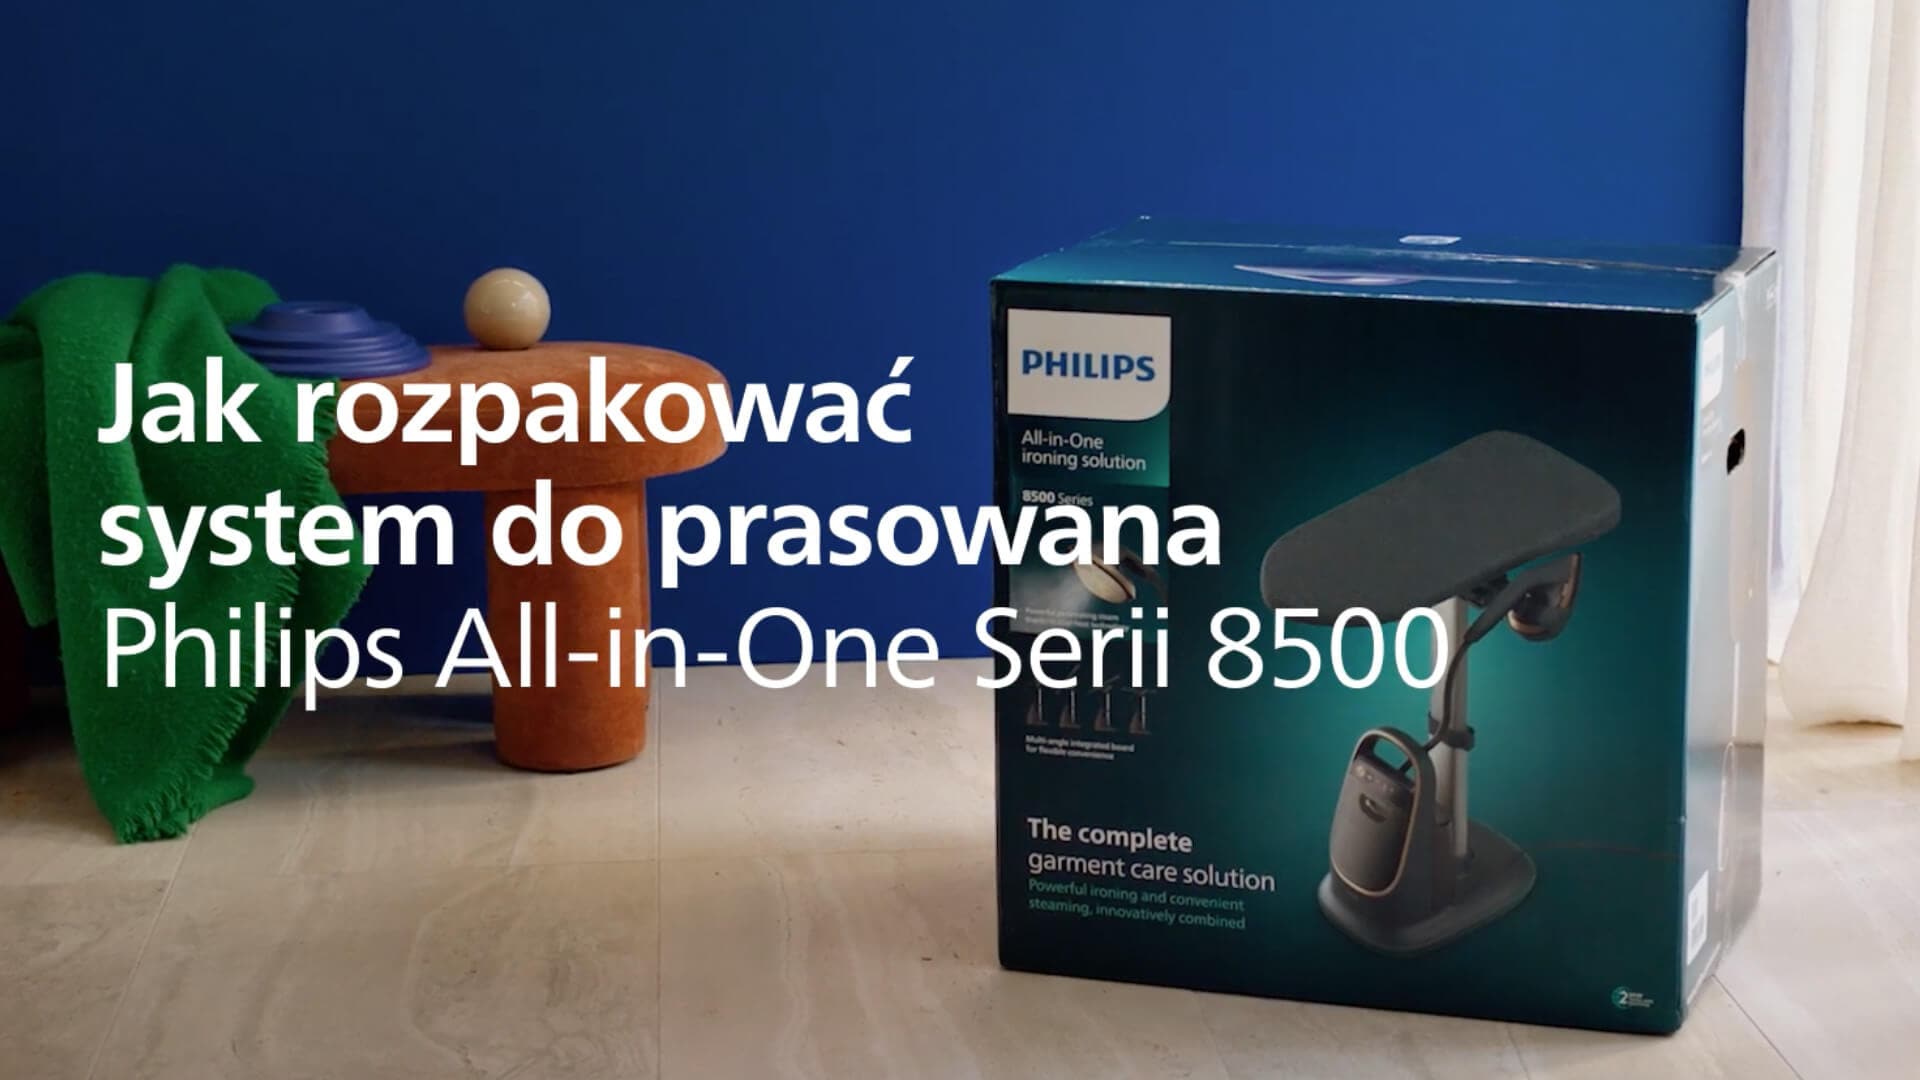 Prezentacja możliwości i pracy systemu do prasowania z deską Philips All-in-One Serii 8500.